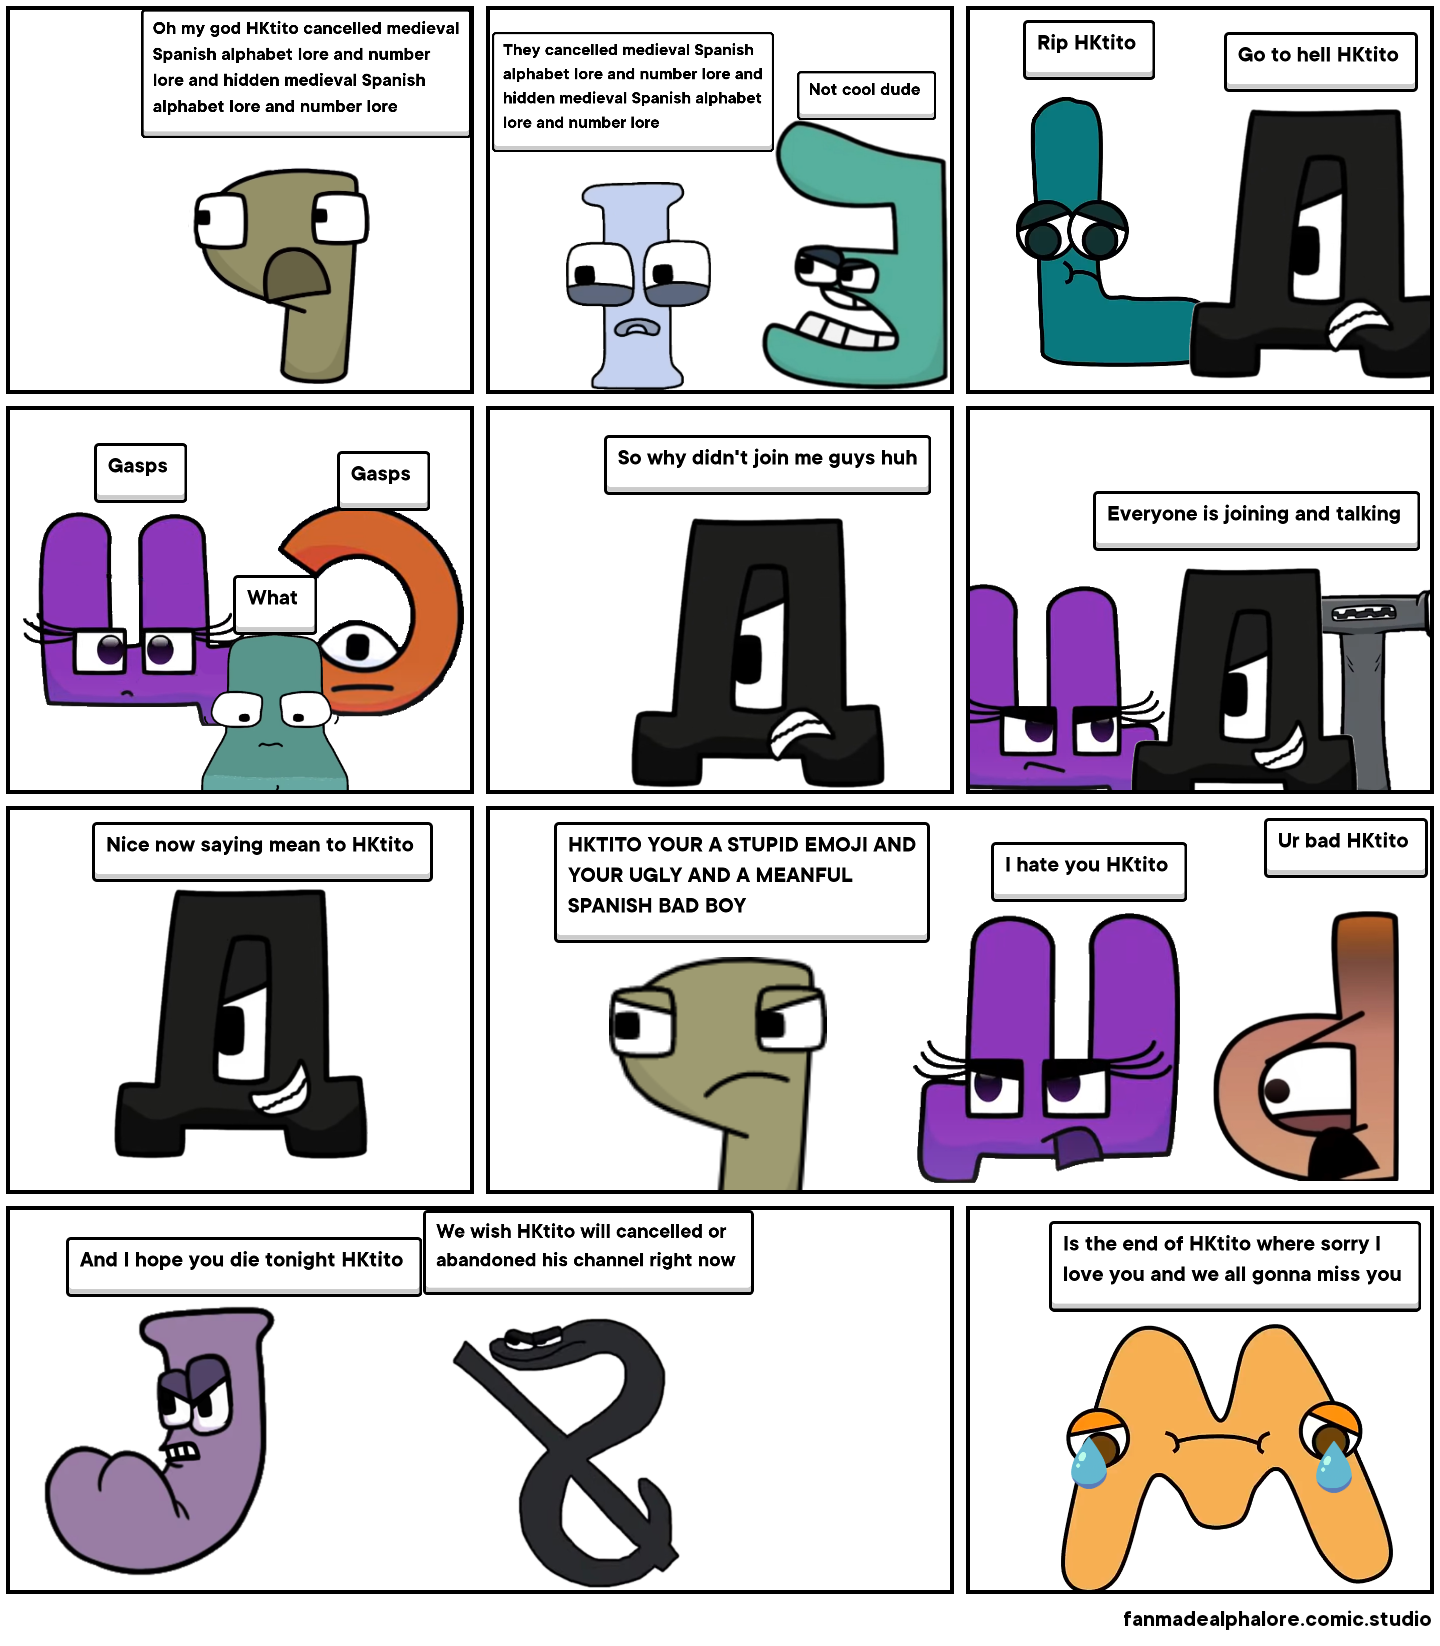 Unifon Alphabet Lore (Part 2 END) - Comic Studio